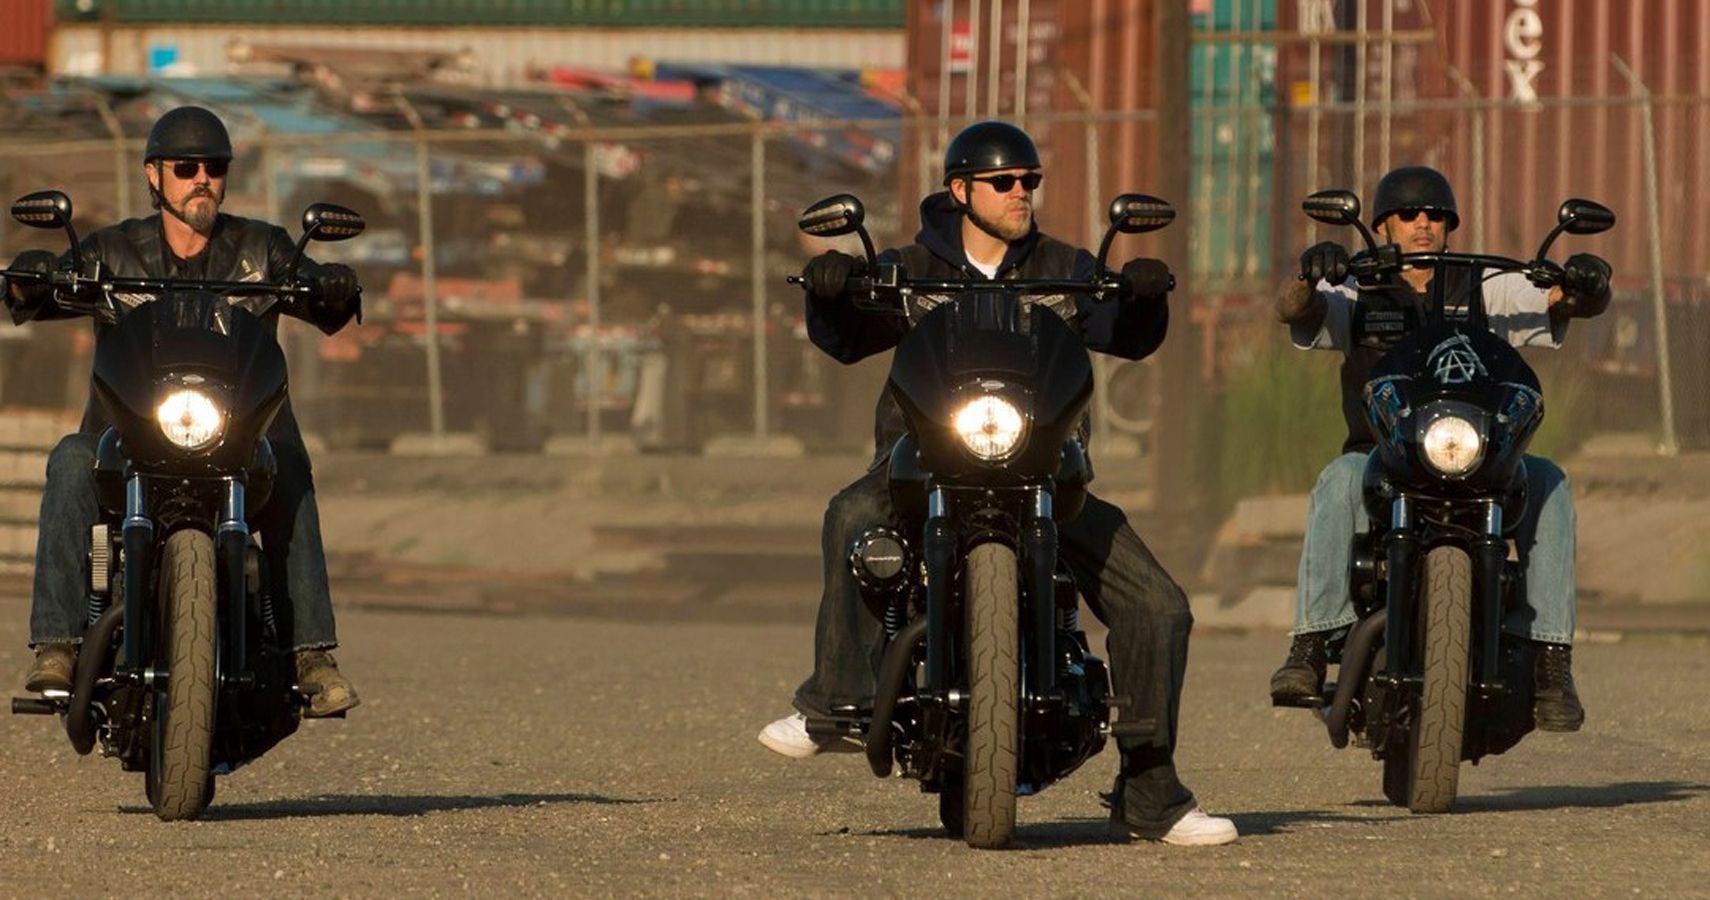 Les acteurs de Sons of Anarchy chevauchent leurs Harley-Davidson préférées